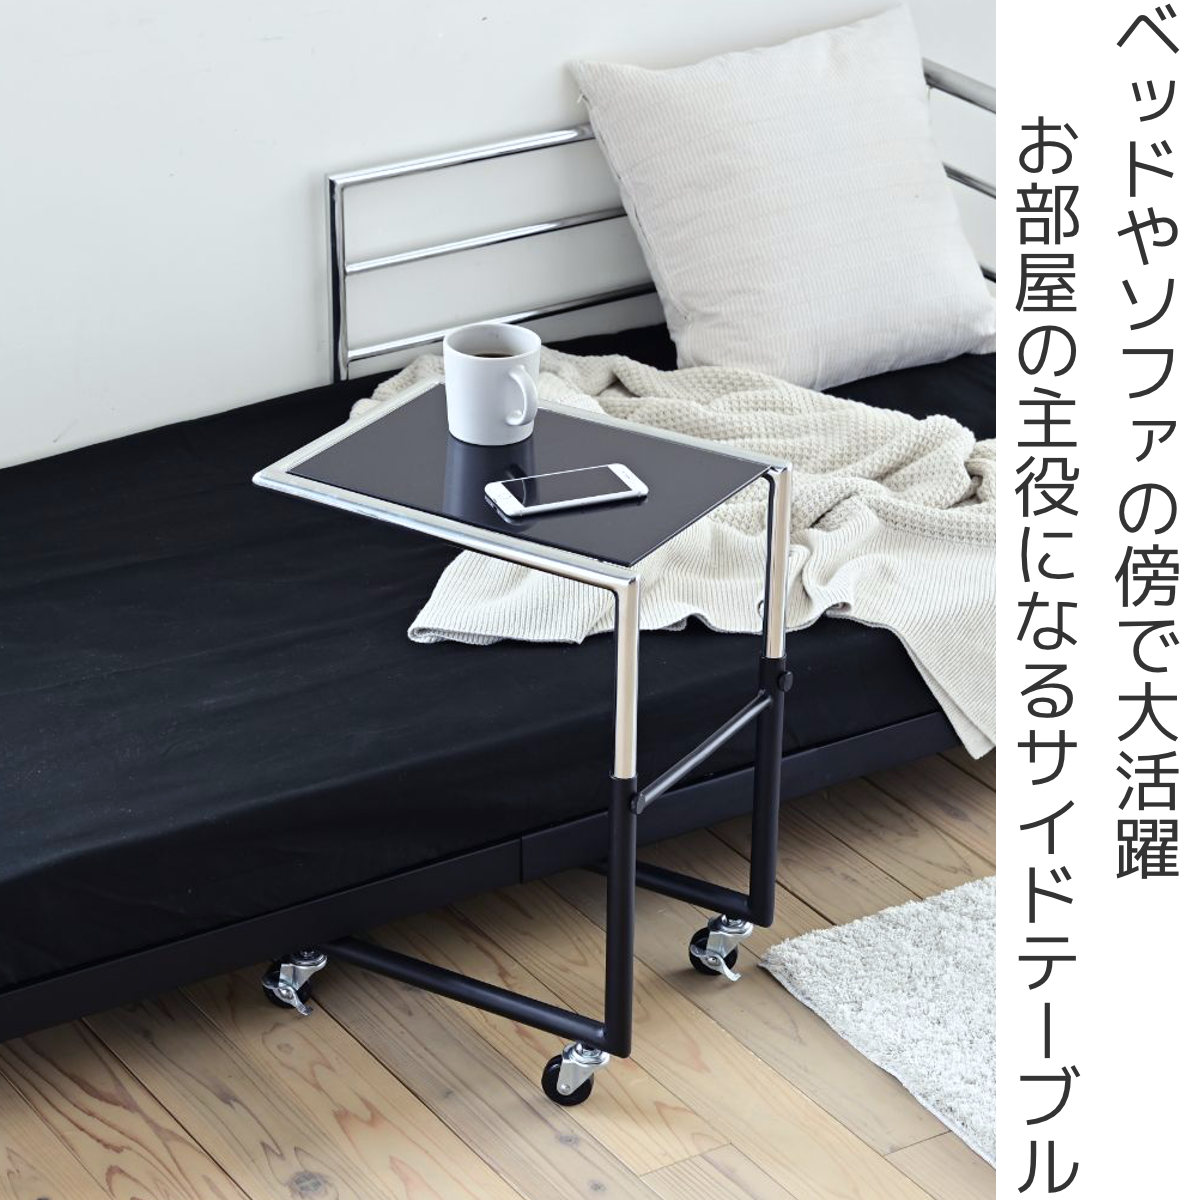 【販売直売】ベッドサイド サイドテーブル キャスター付 高さ調整可能 マットレス